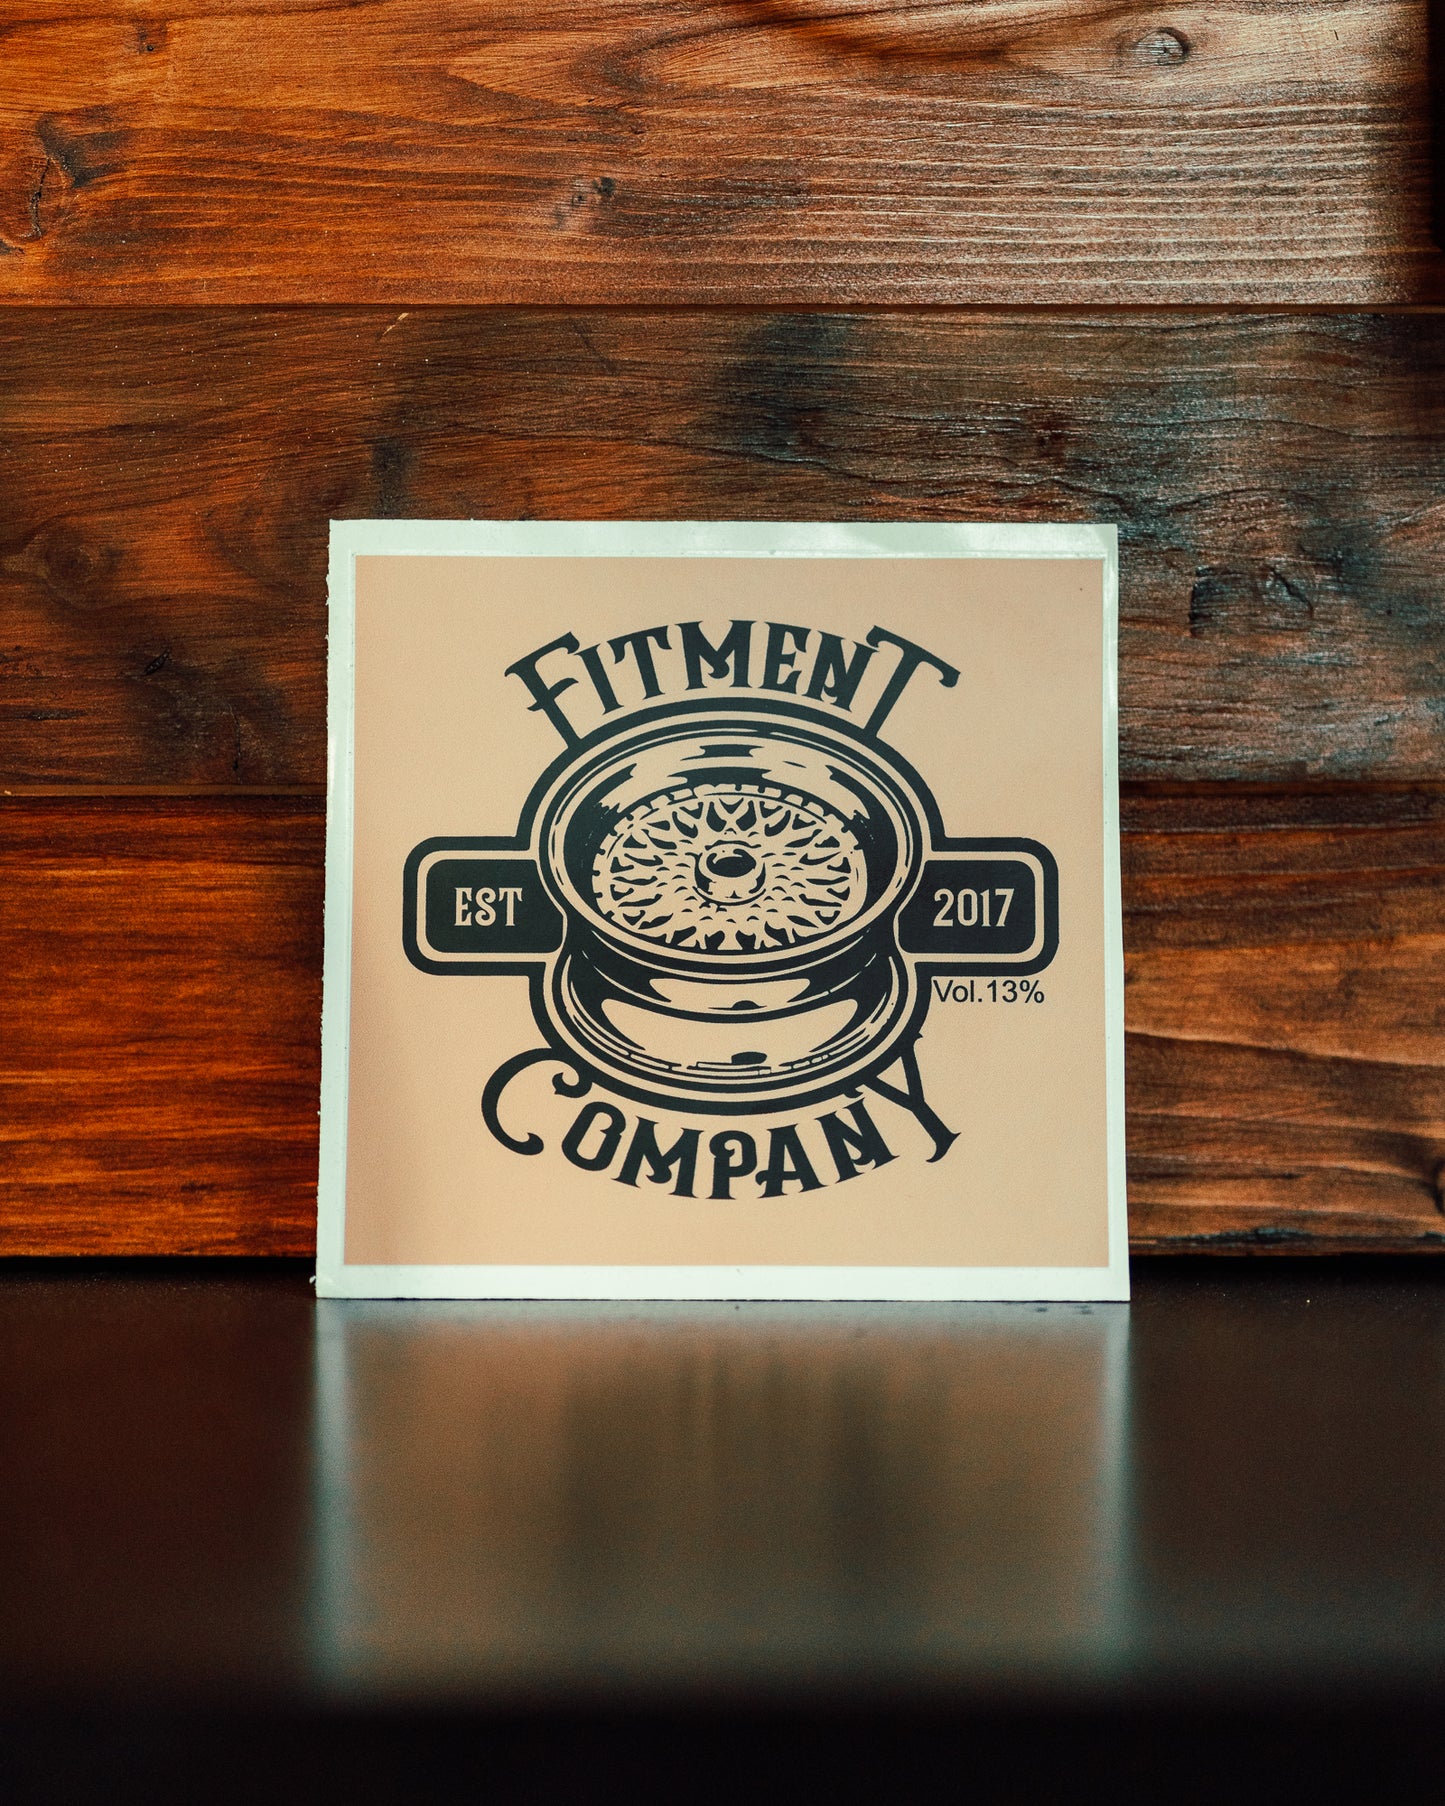 "Fitment Company EST. 2017 Vol. 13%" Sticker